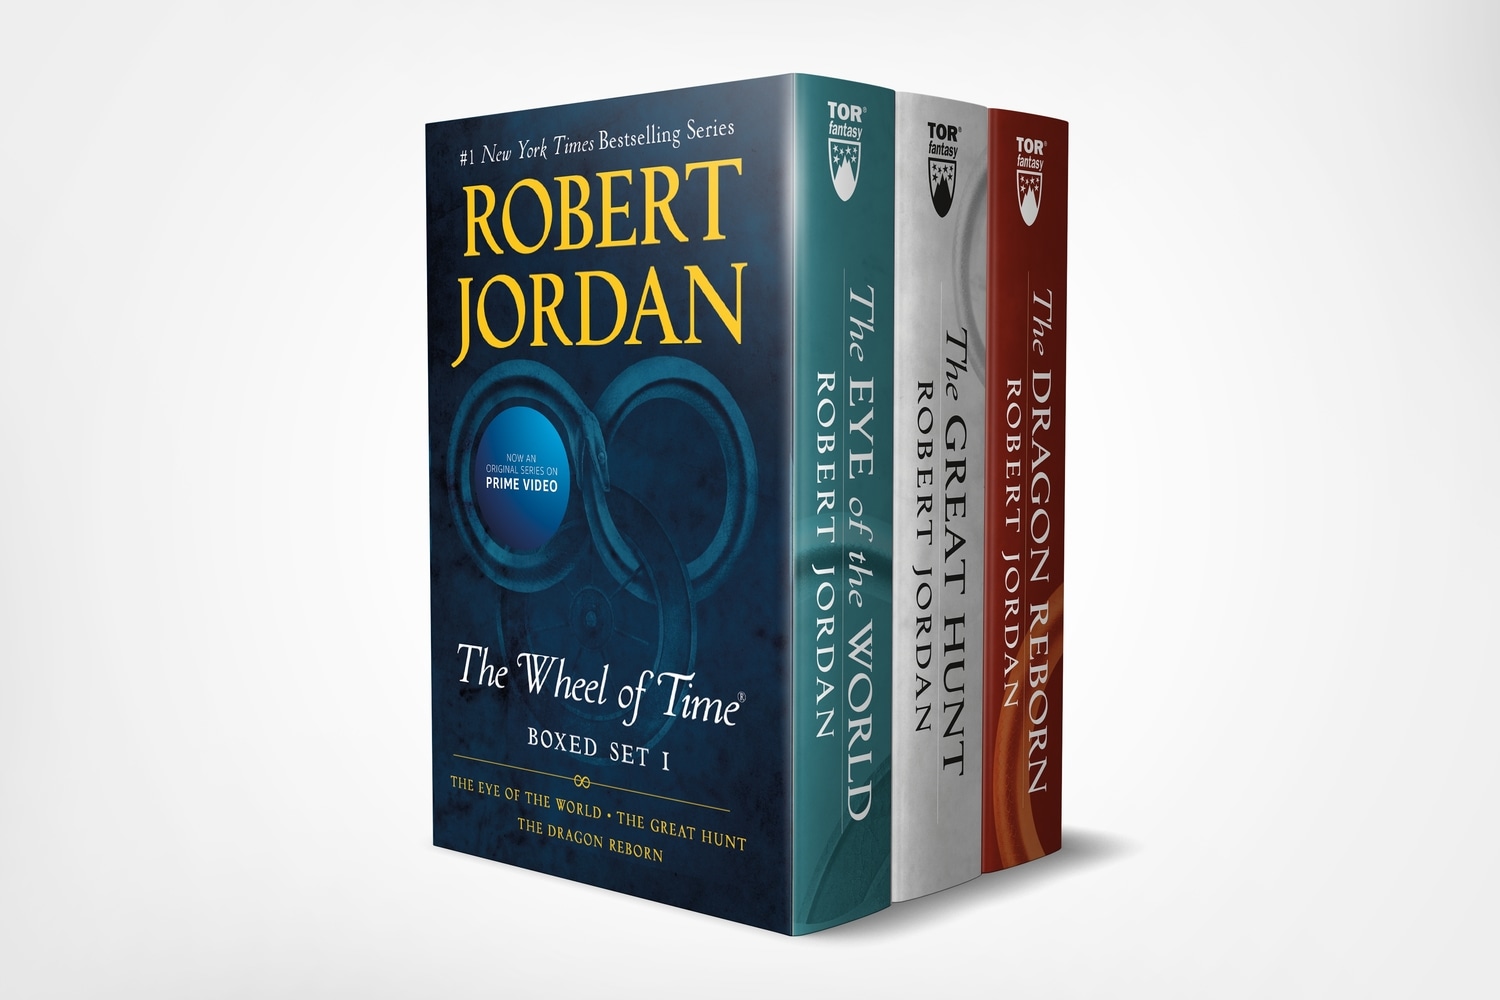 Book “Wheel of Time Premium Boxed Set I” by Robert Jordan — October 29, 2019